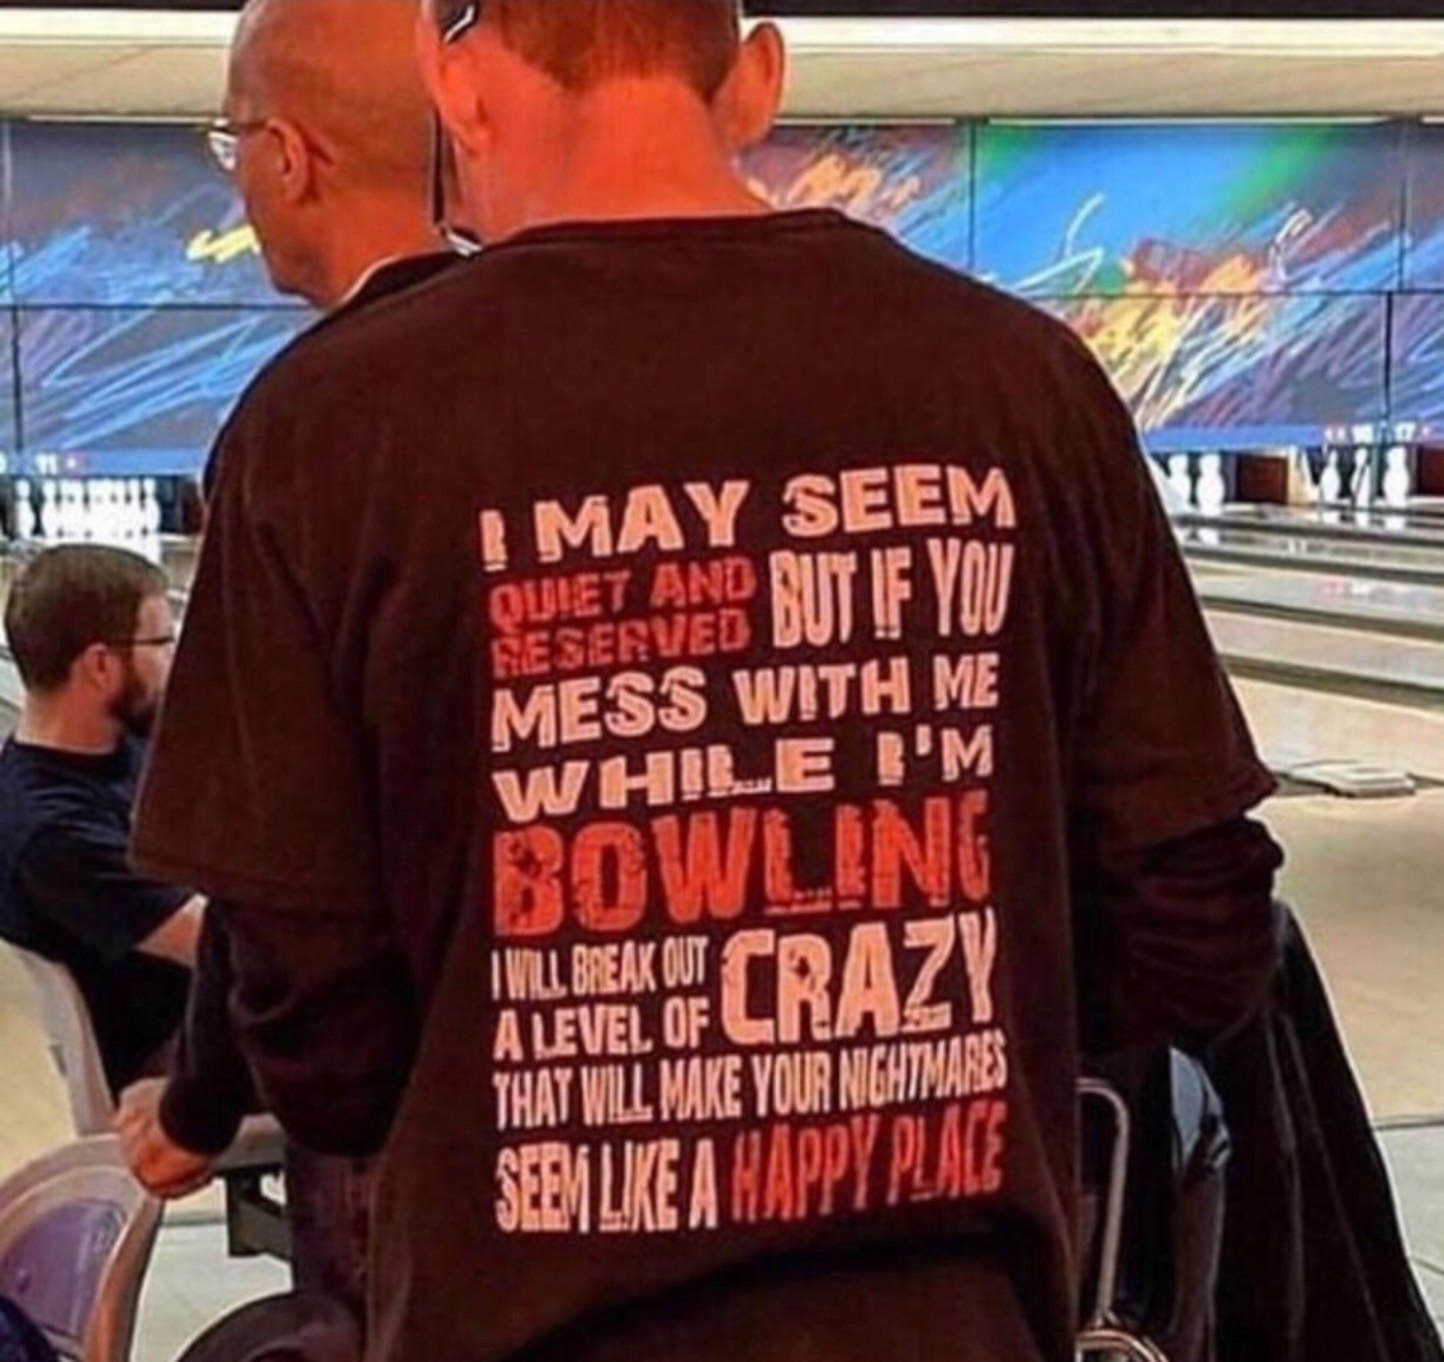 bowling - meme